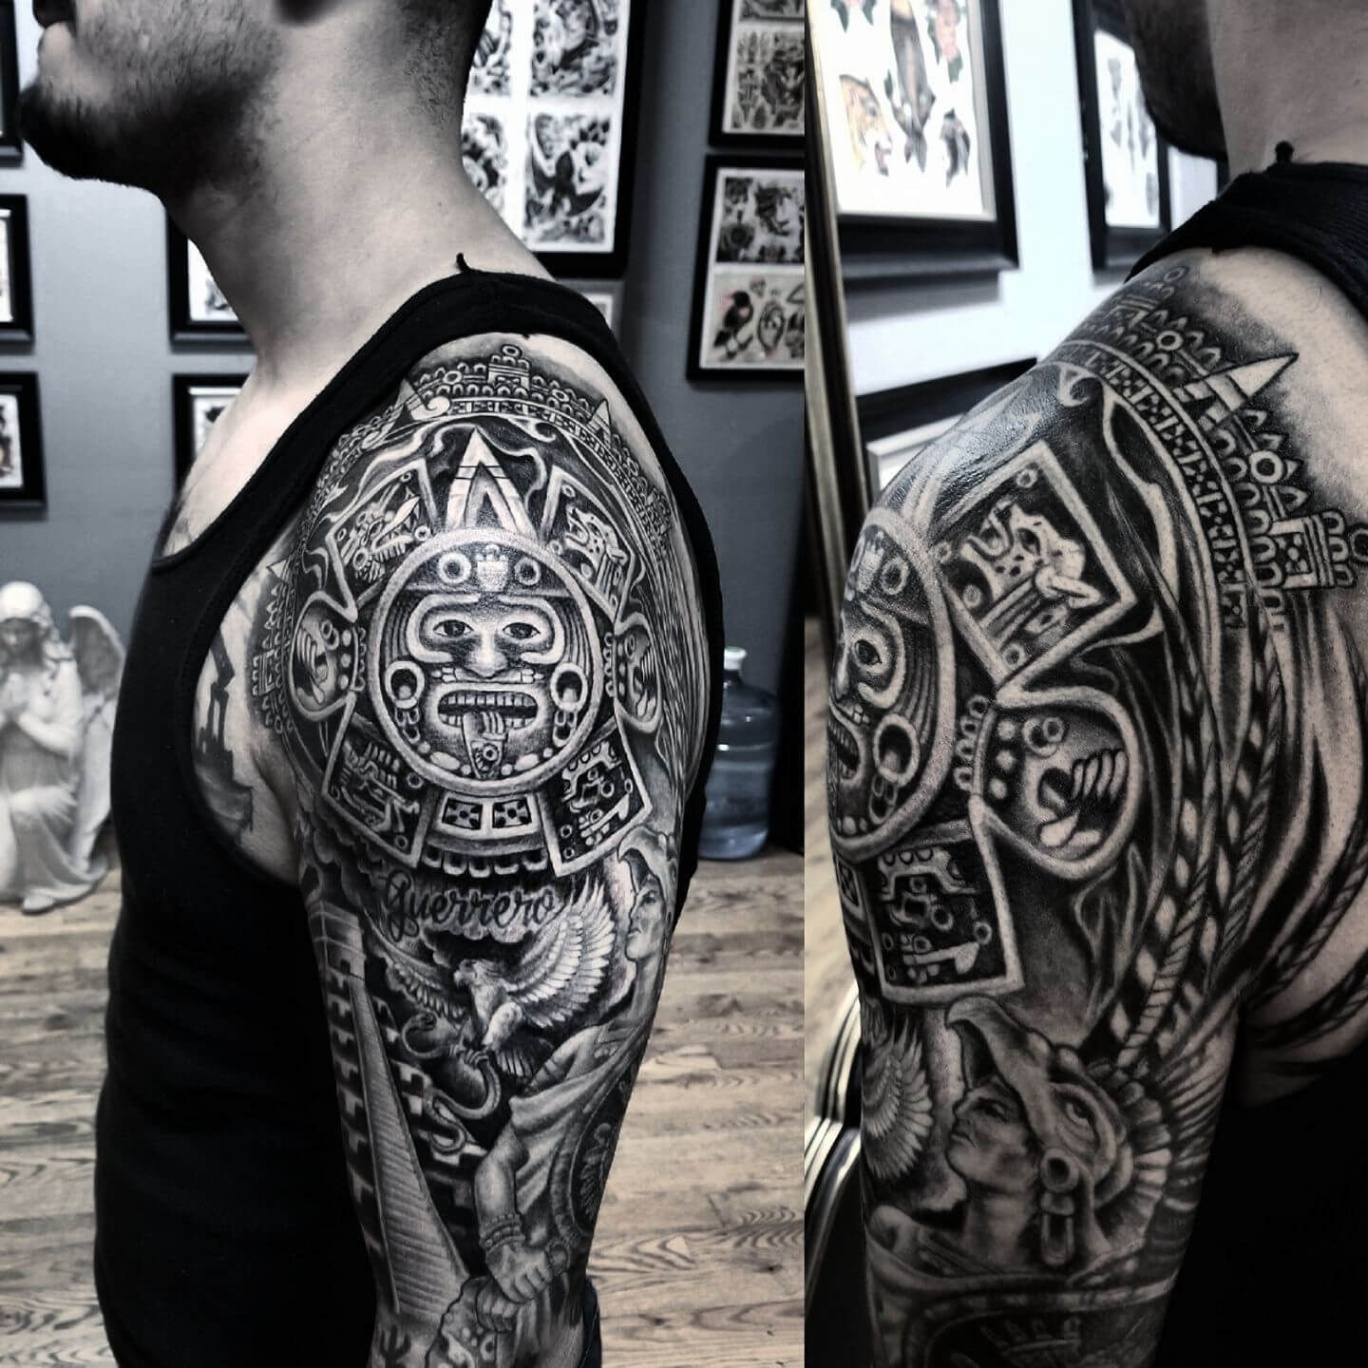 aztec sleeve tattoo designs Bulan 2 Arm Aztec Tattoos - Tattoo Trends Gallery